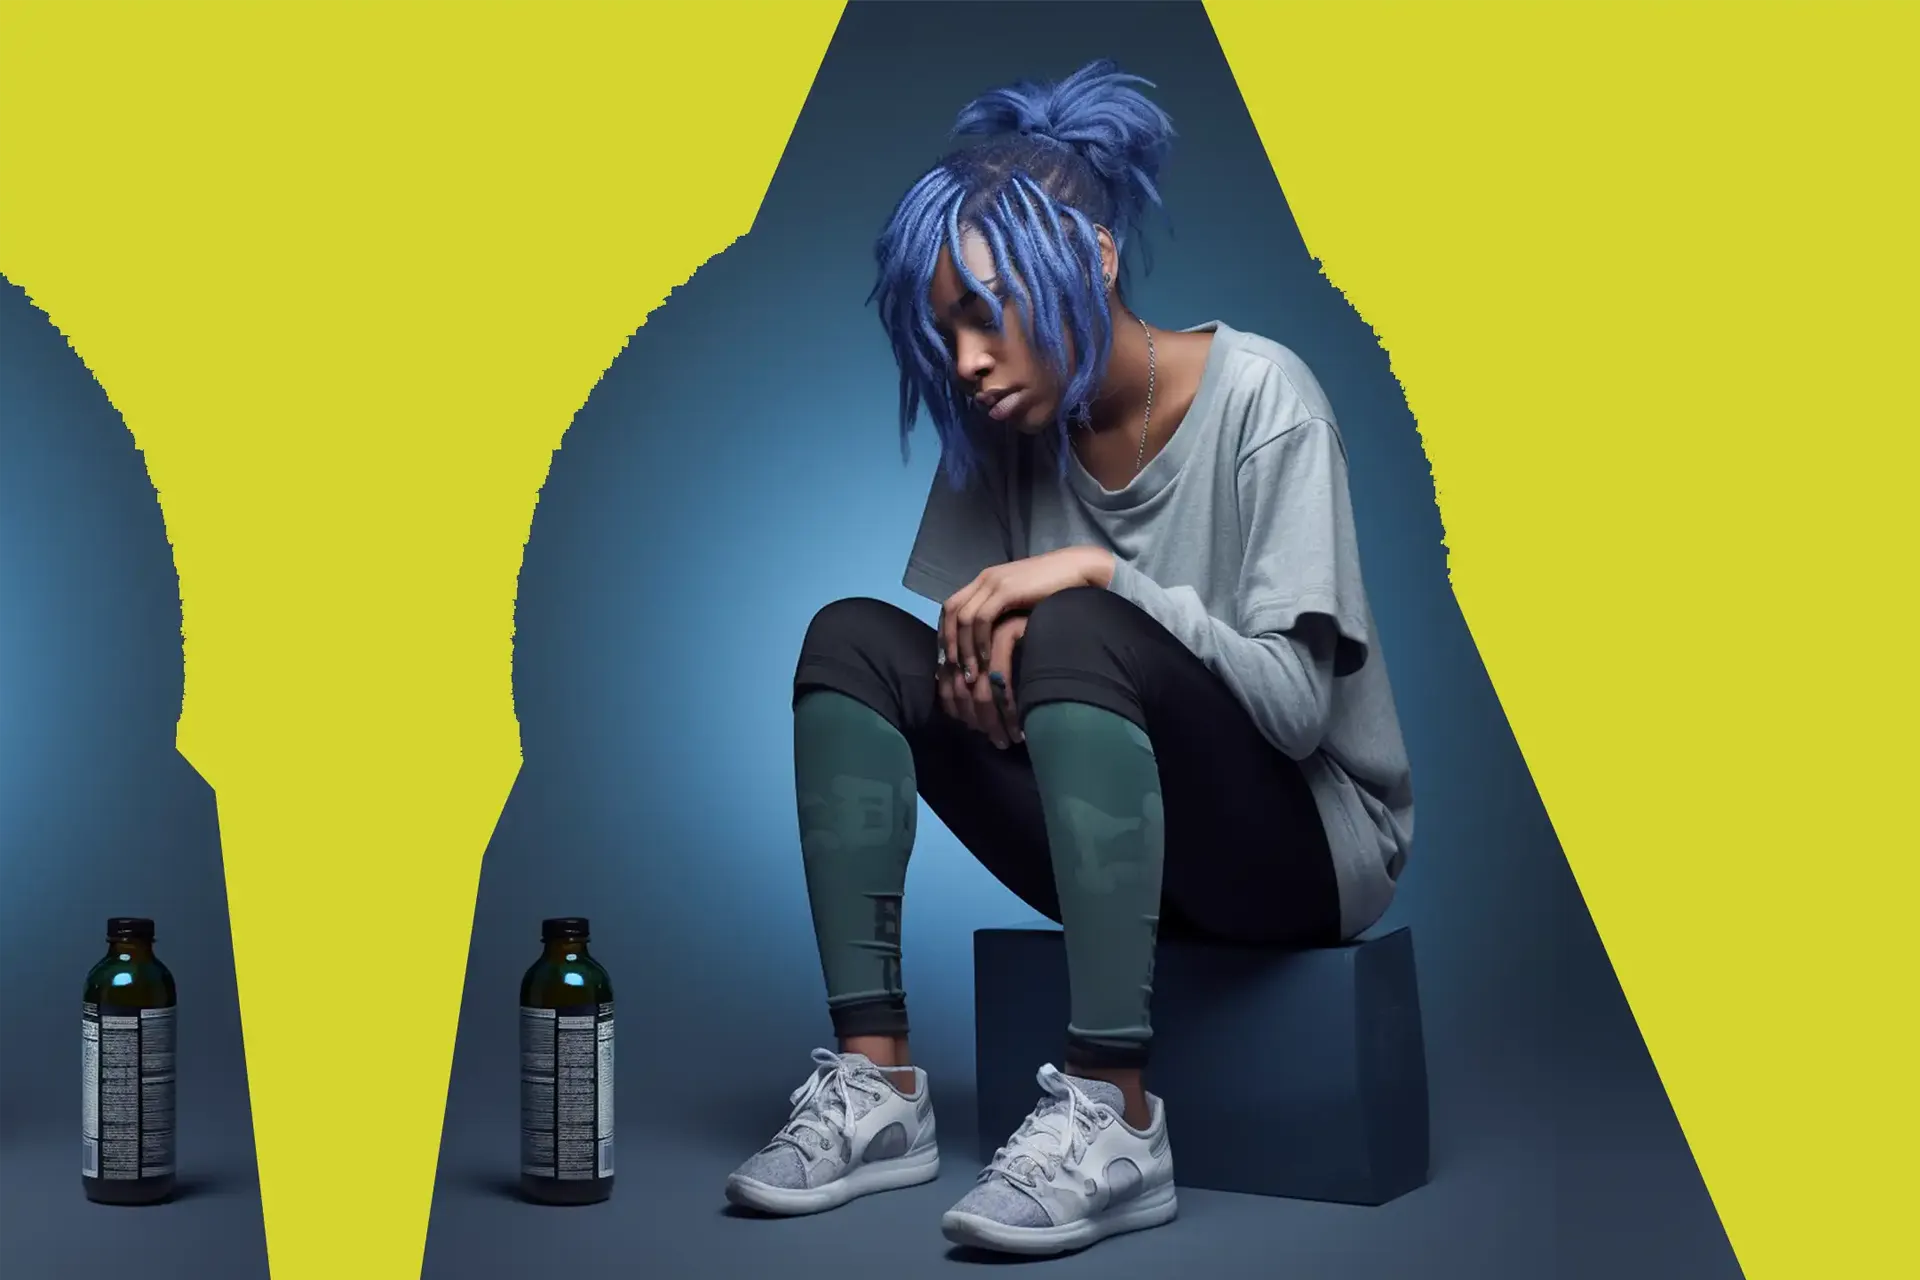 Dunkelhätife Frau mit lila Haaren sitzt vor einer Flasche mit Oliven oder Olivenöl